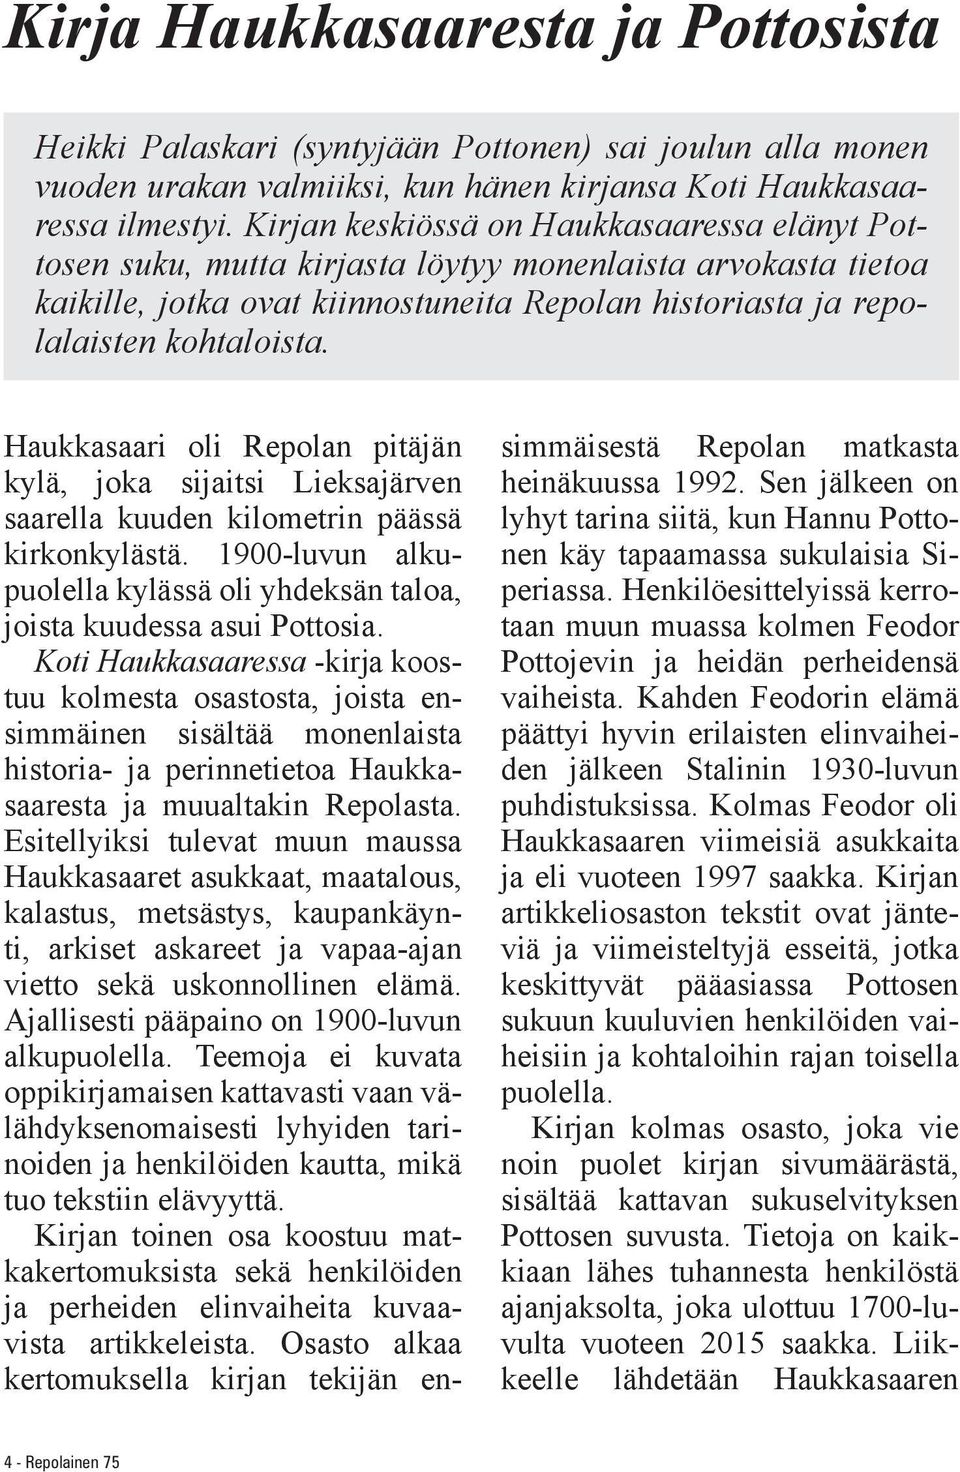 Haukkasaari oli Repolan pitäjän kylä, joka sijaitsi Lieksajärven saarella kuuden kilometrin päässä kirkonkylästä. 1900-luvun alkupuolella kylässä oli yhdeksän taloa, joista kuudessa asui Pottosia.